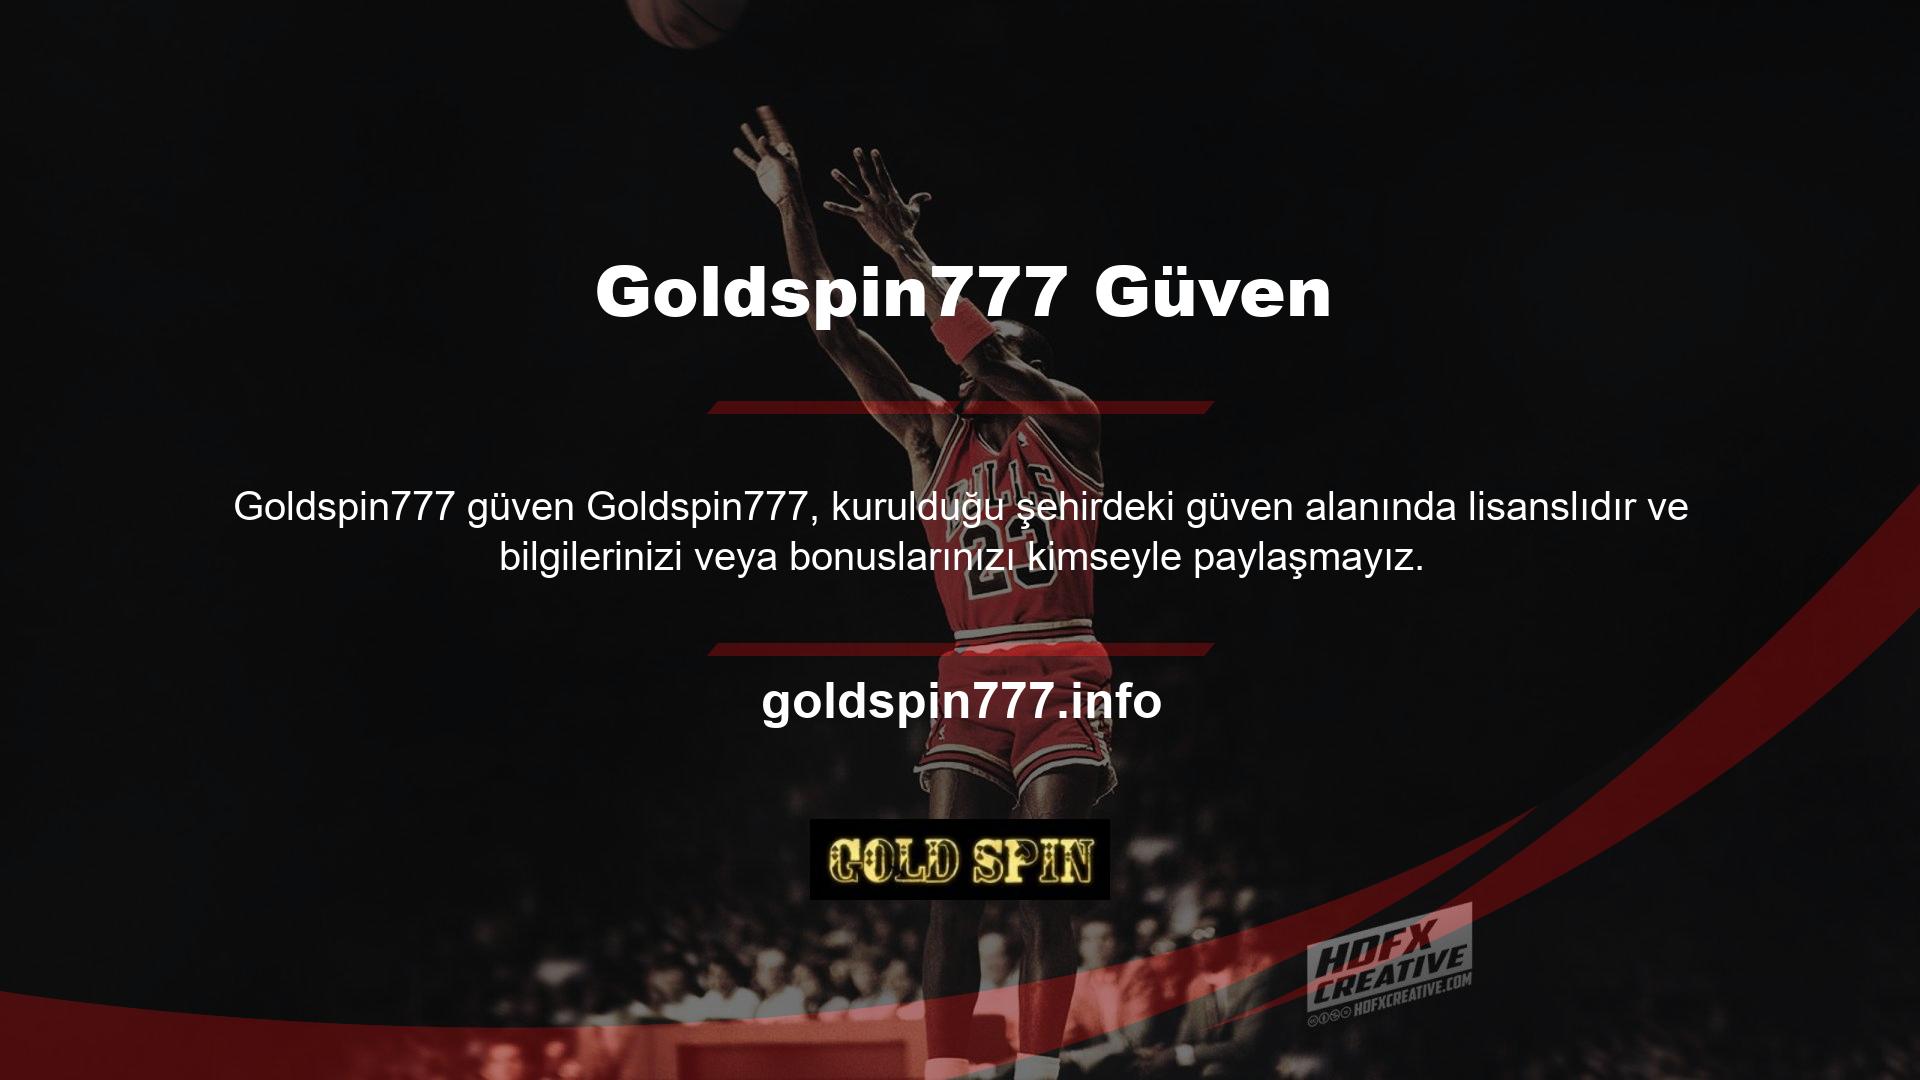 Çoğu casino sitesi Goldspin777'tir